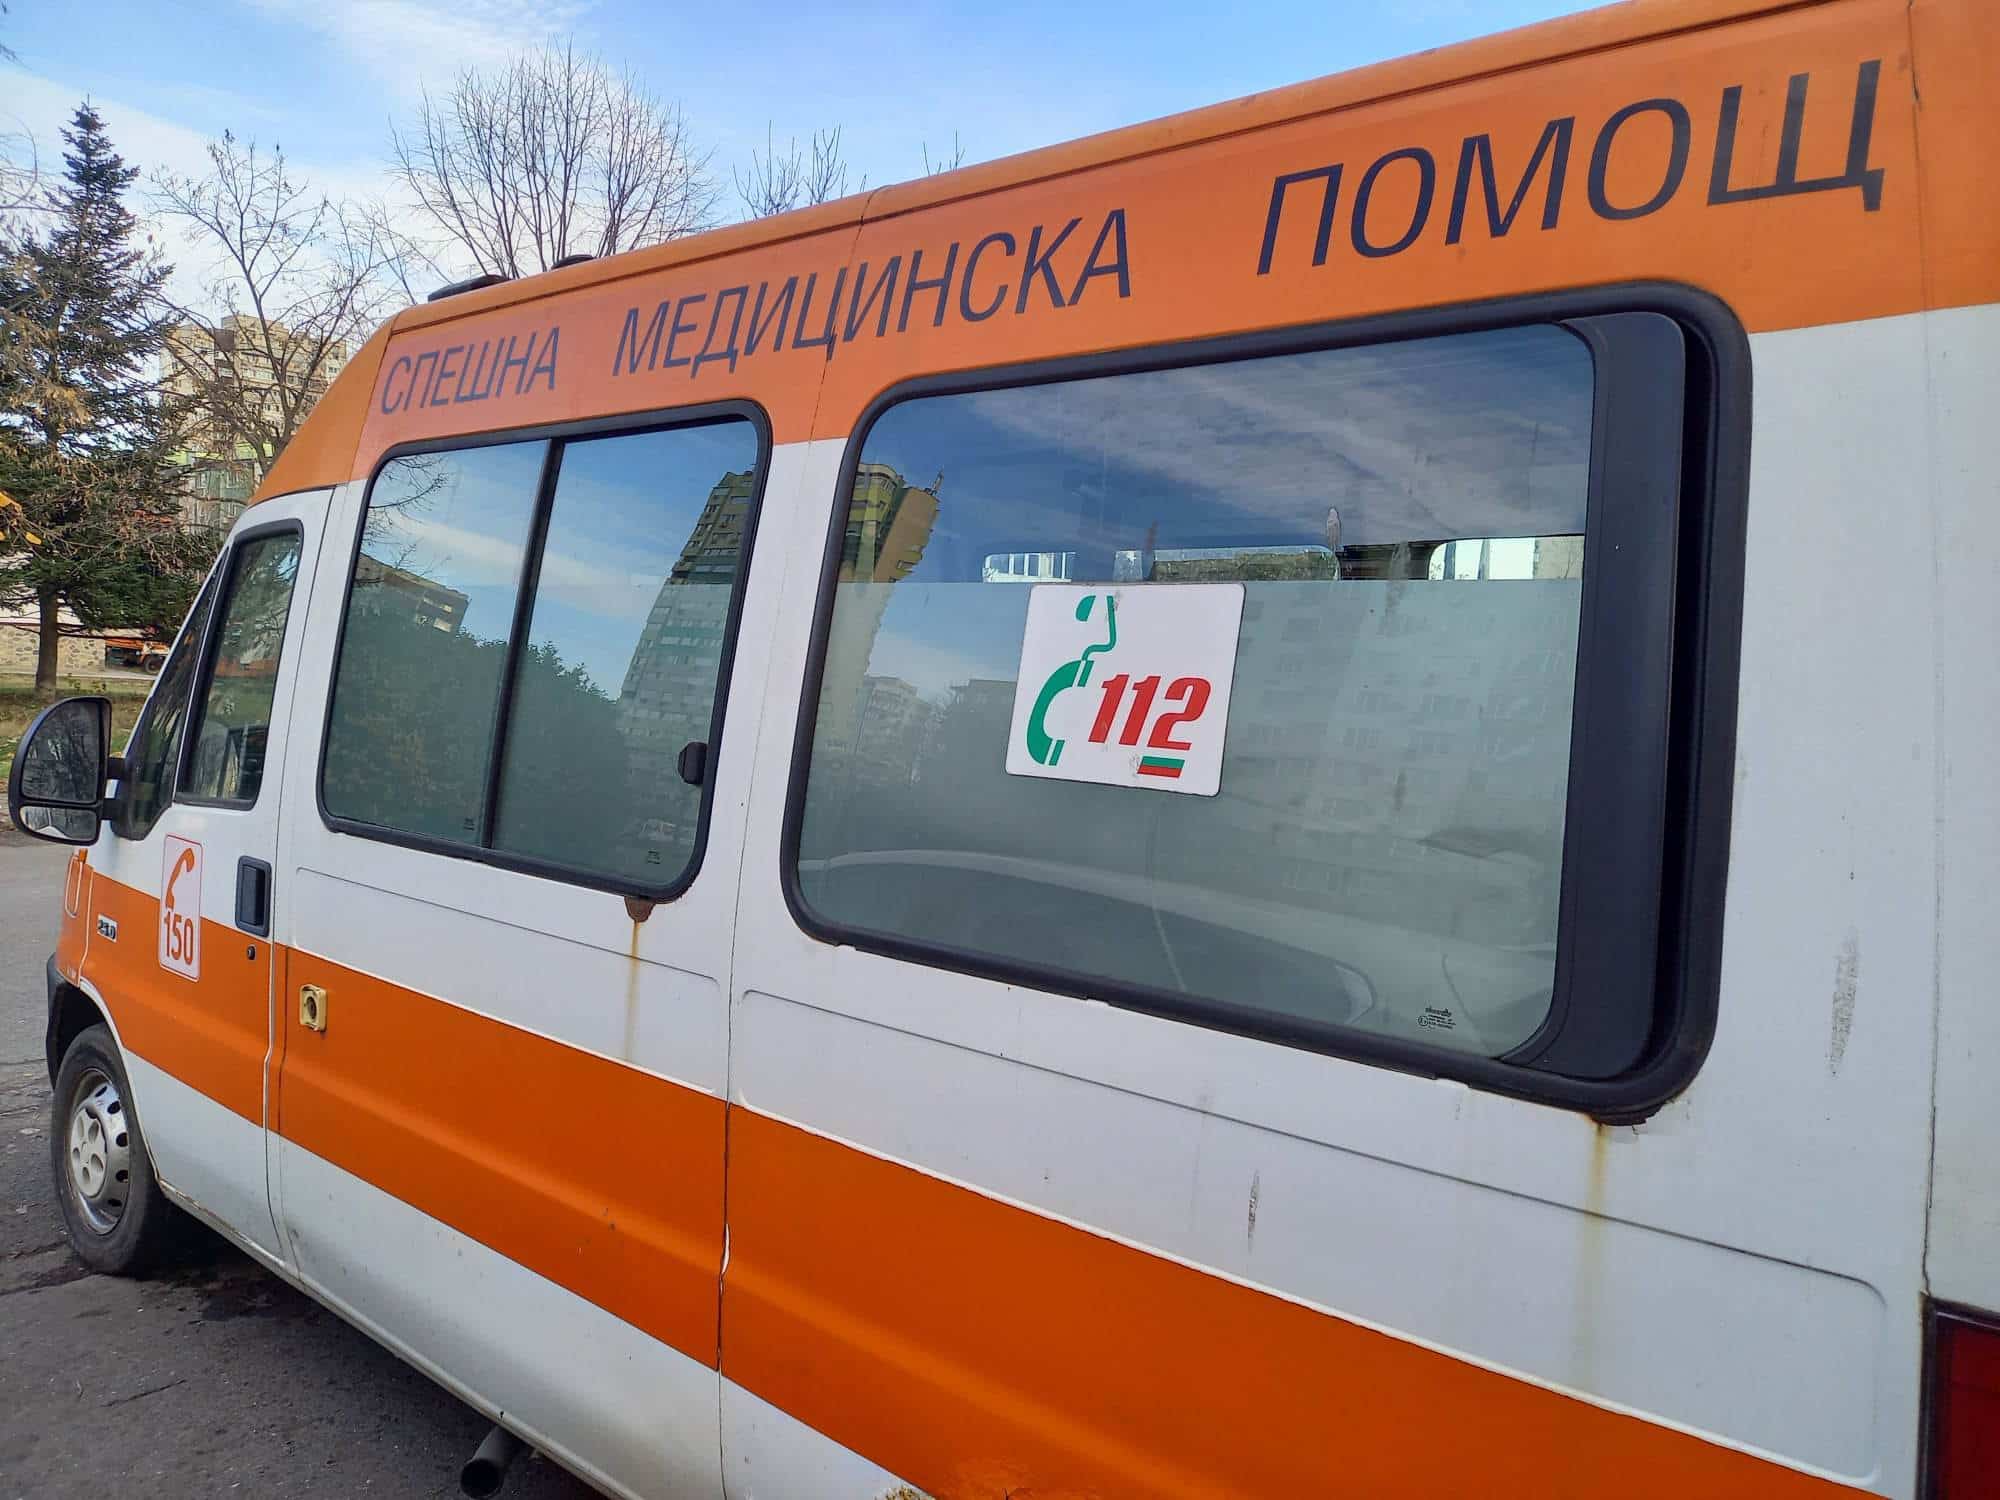 Катастрофа затруднява движението между Асеновград и Смолян, съобщиха от ОДМВР-Пловдив.
Инцидентът